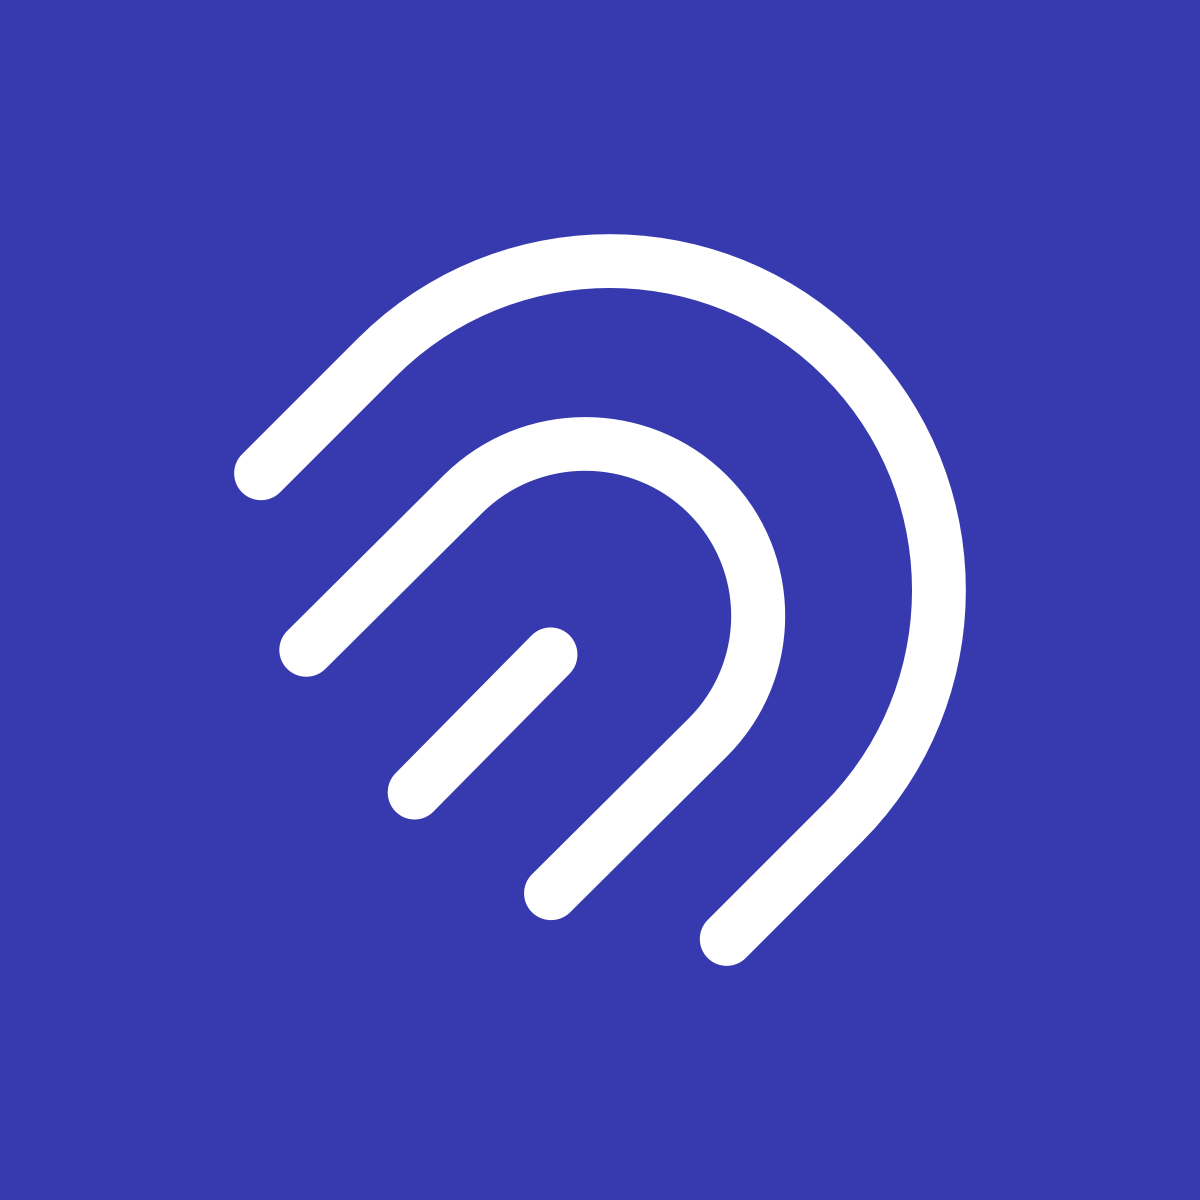 Tapcart ‑ Mobile App Builder